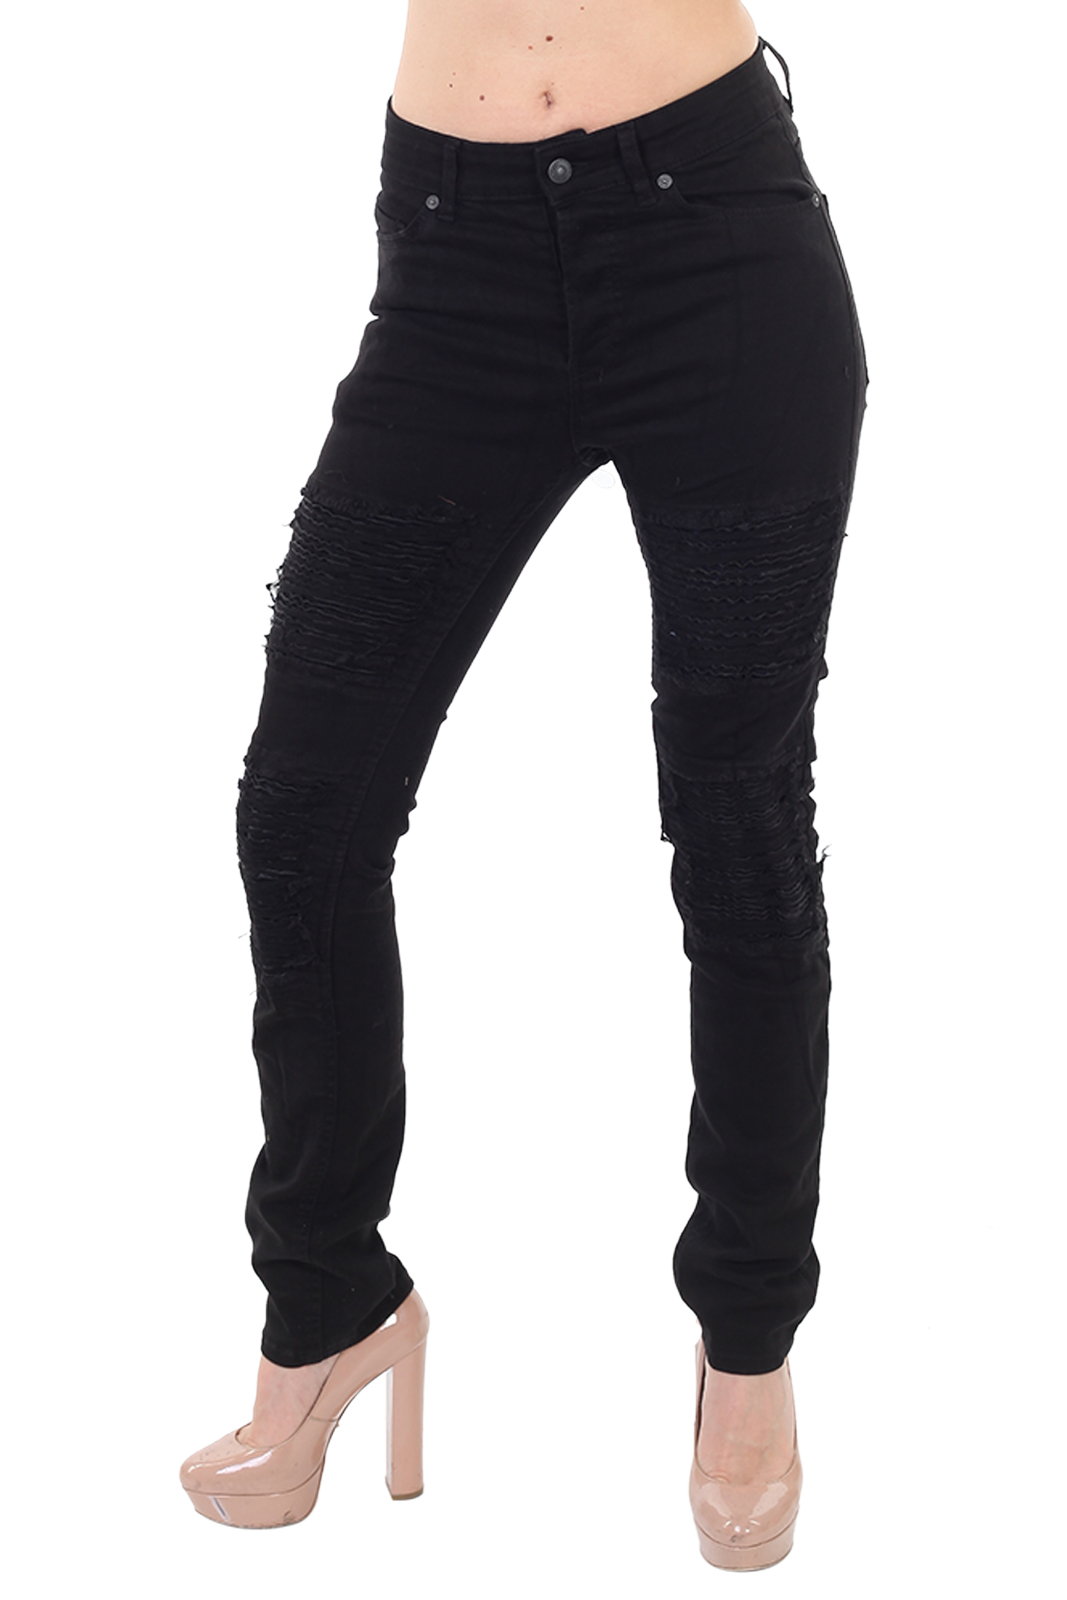 Купить в интернет магазине женские джинсы Super skinny